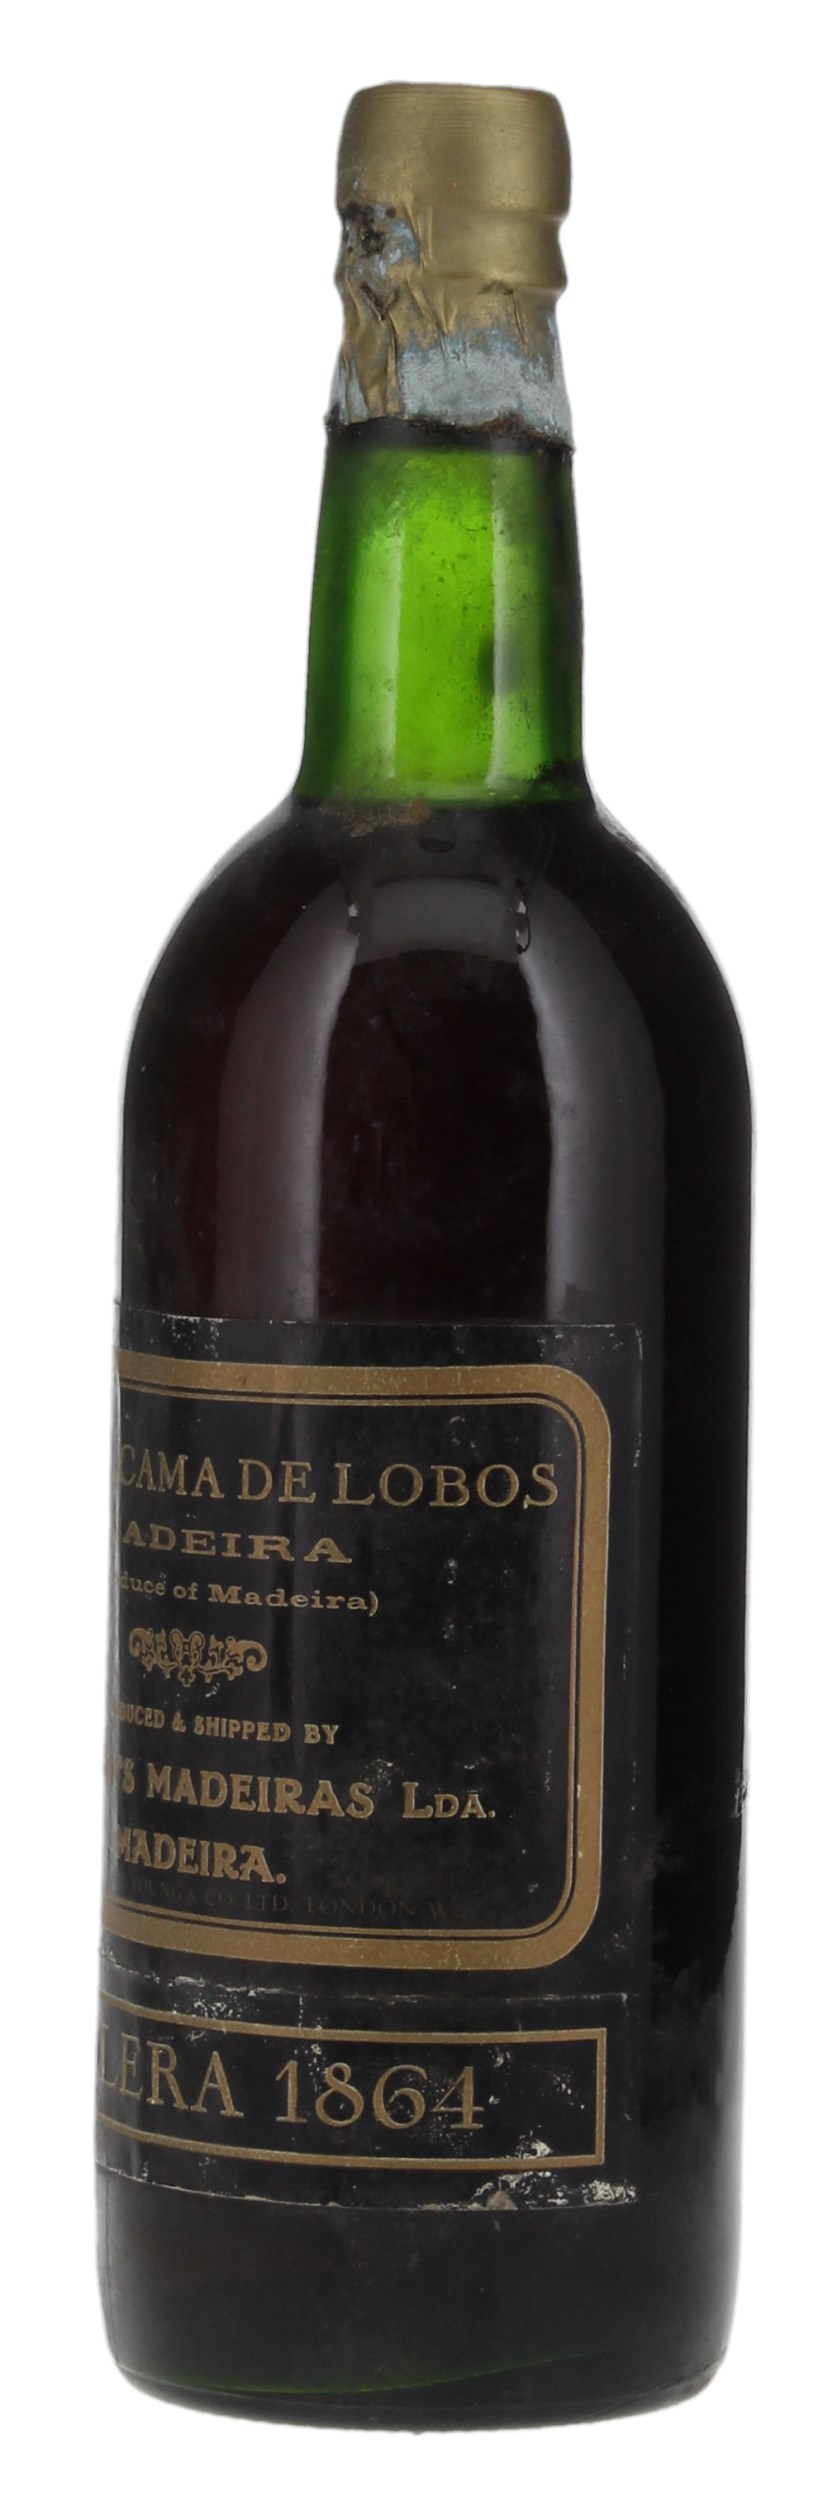 N.V. Blandy's Grand Cama de Lobos Madeira Solera 1864, 750ml